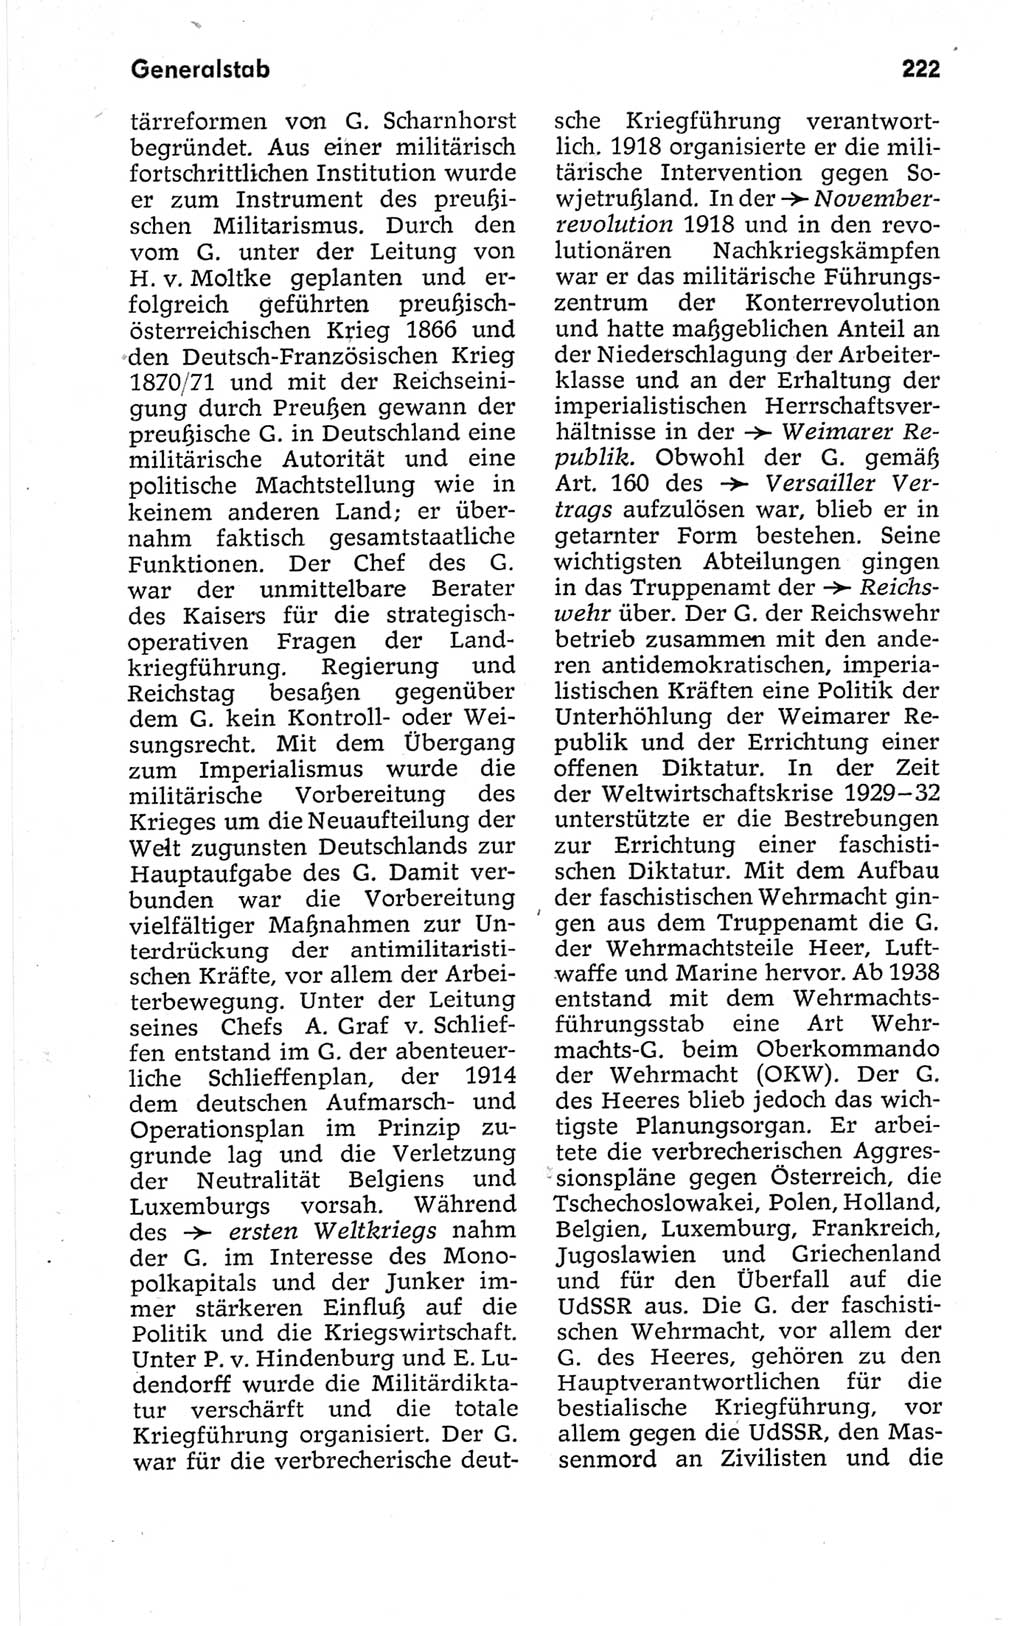 Kleines politisches Wörterbuch [Deutsche Demokratische Republik (DDR)] 1967, Seite 222 (Kl. pol. Wb. DDR 1967, S. 222)